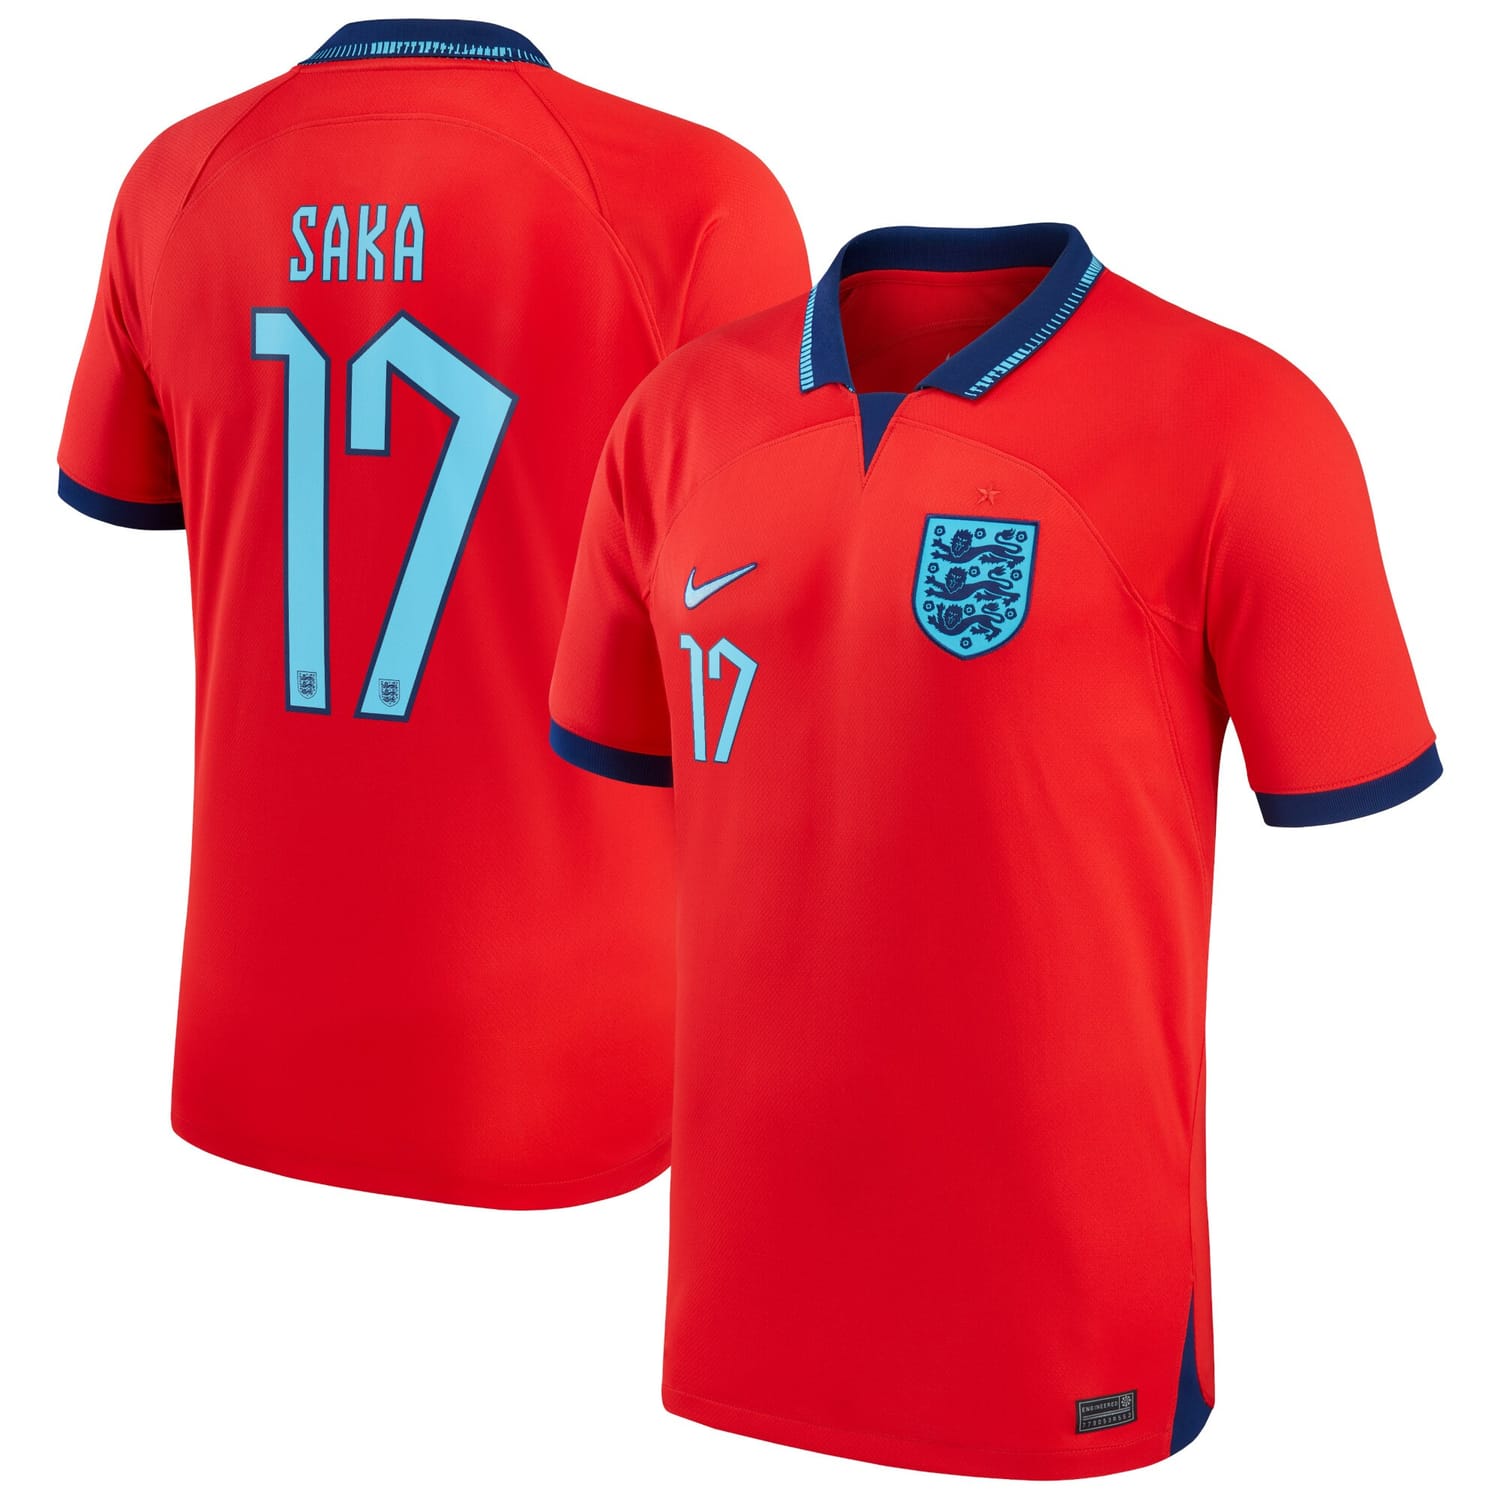 England National Team Away Jersey Shirt 2022 player Bukayo Saka 17 printing for Men